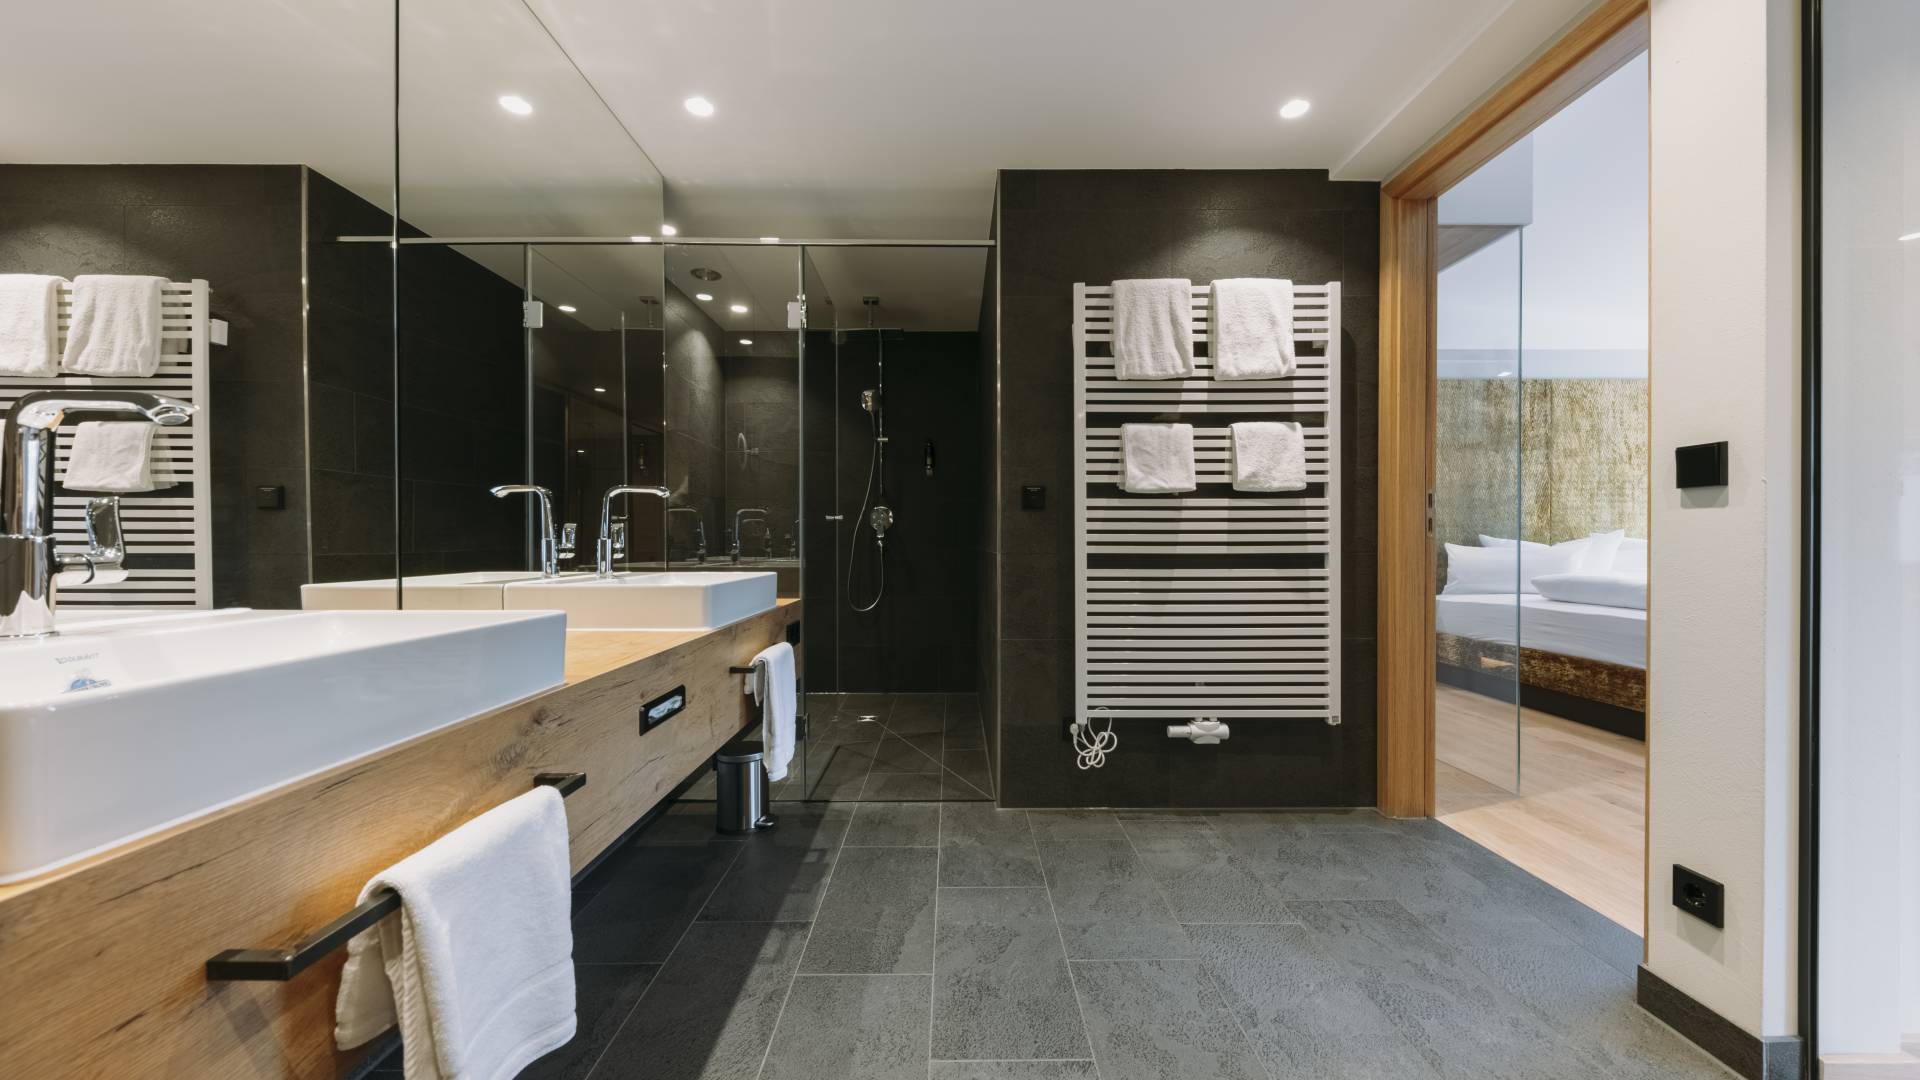 Ein stilvolles Badezimmer mit dunkler Vertäfelung und Holzelementen.